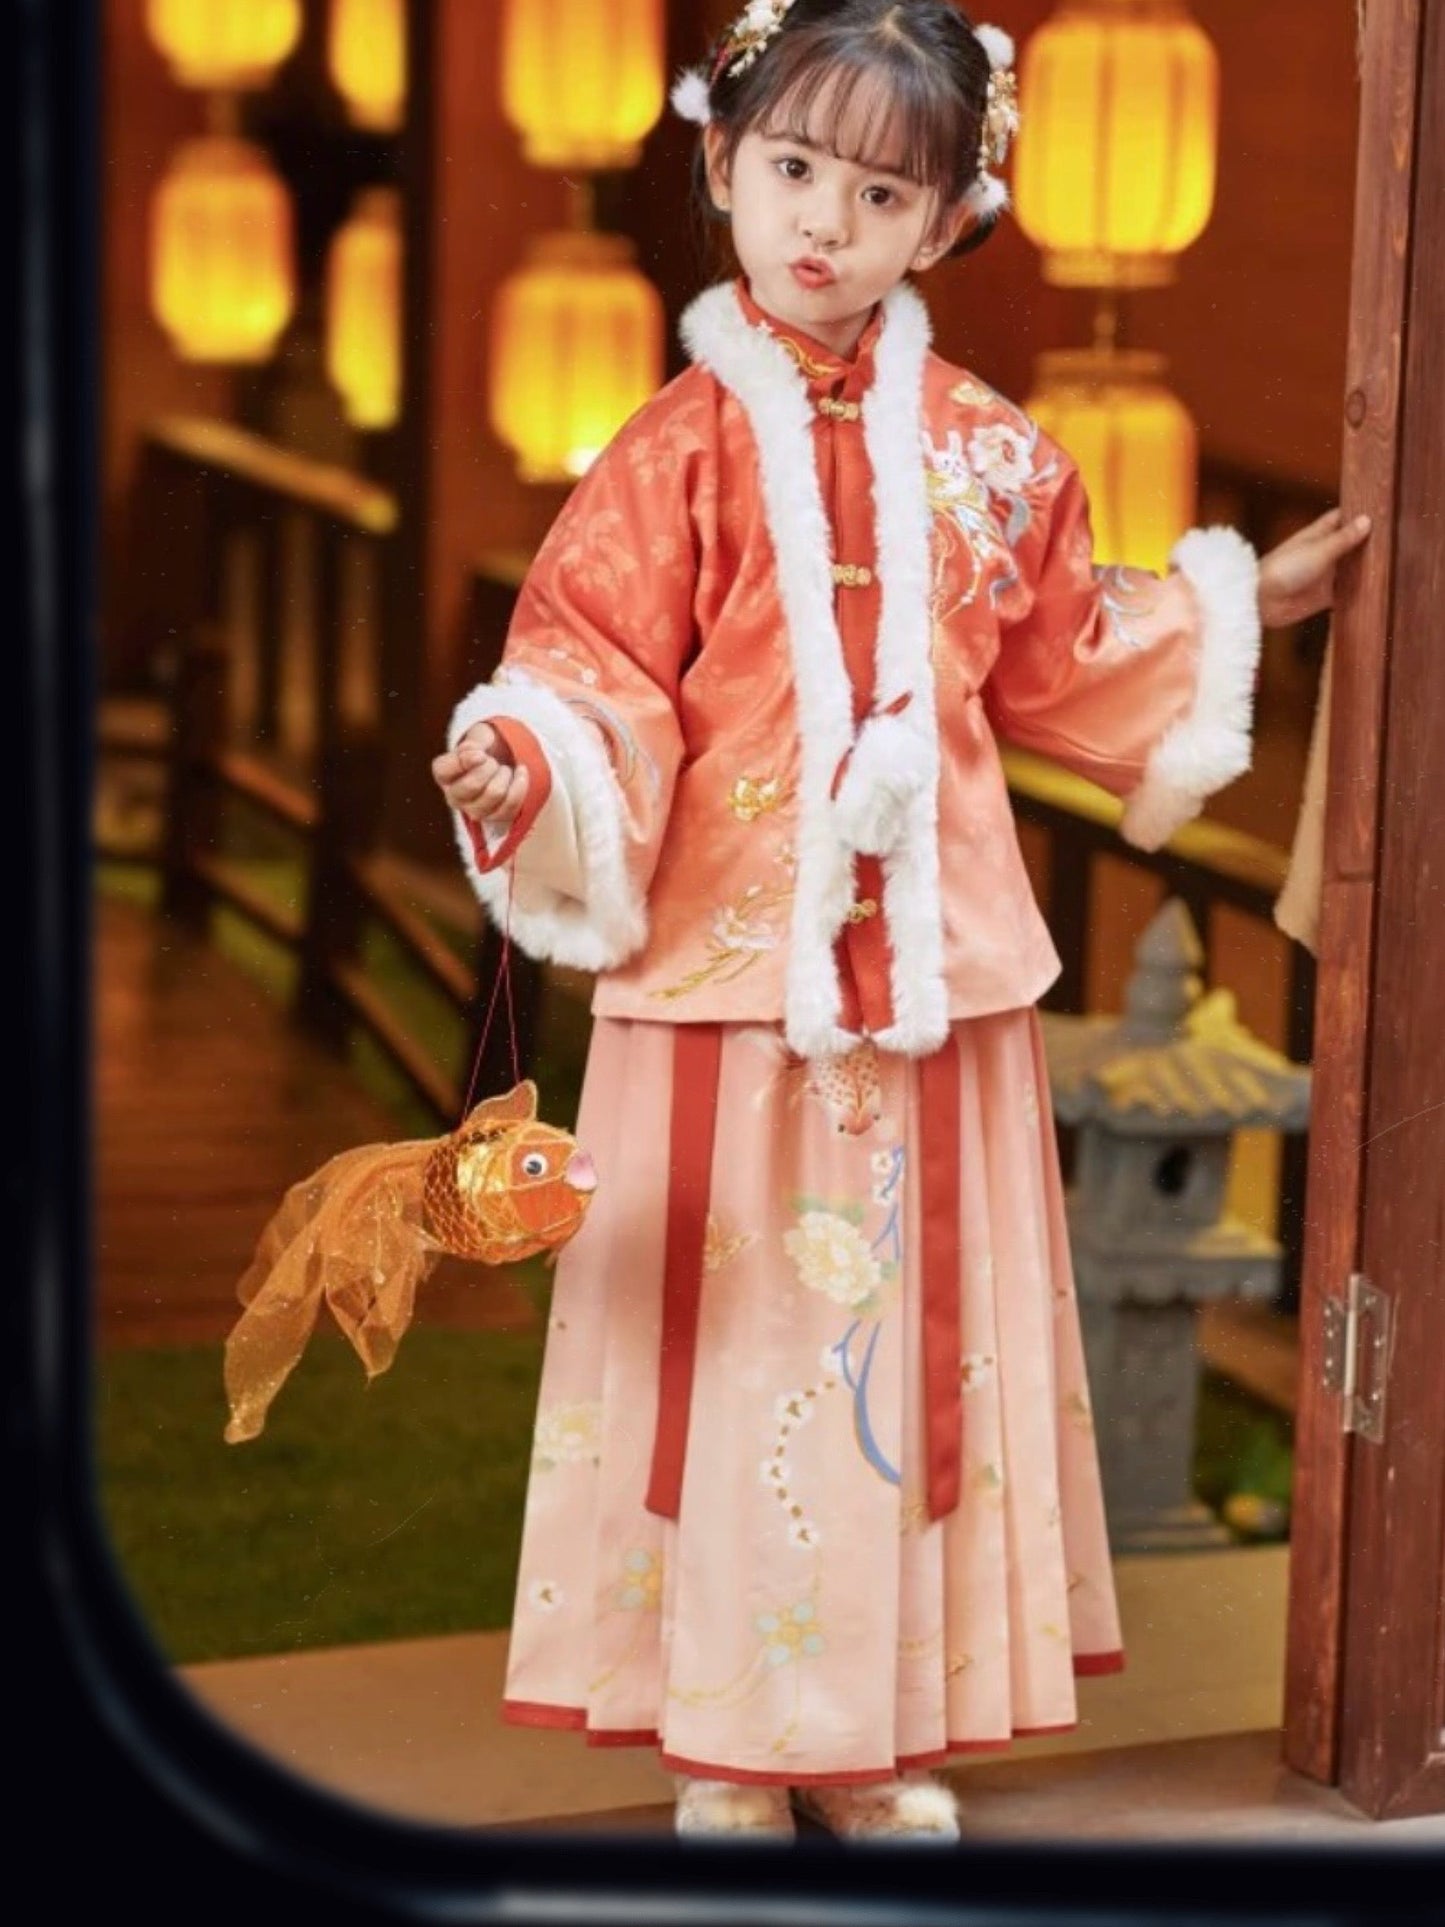 PreOrder: Koi Splendor - Traditional Hanfu for Little Girls: Chinese Elegance